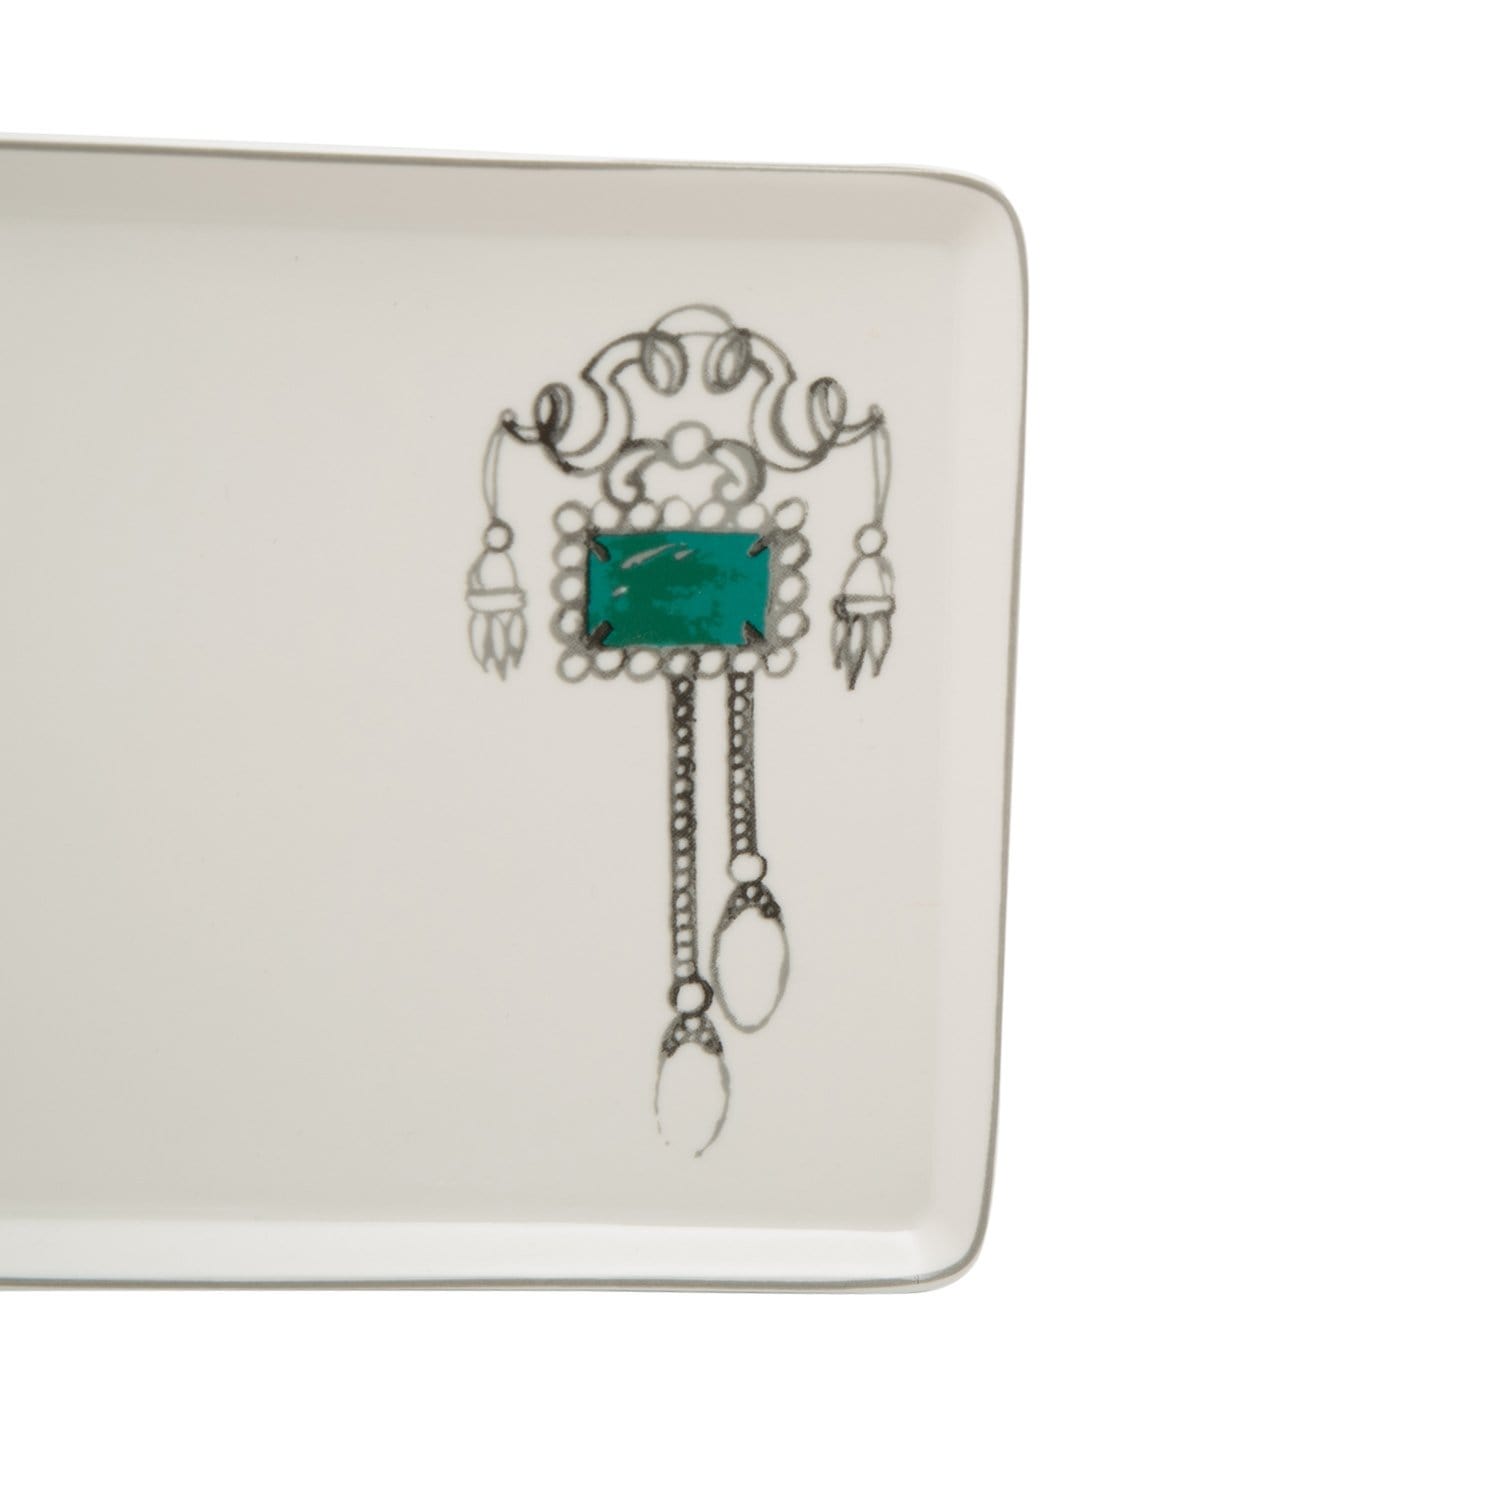 L'atelier FB Emerald Rectangular Plate - 27.8 x 15.1 cm - TC 4711 018 - Jashanmal Home